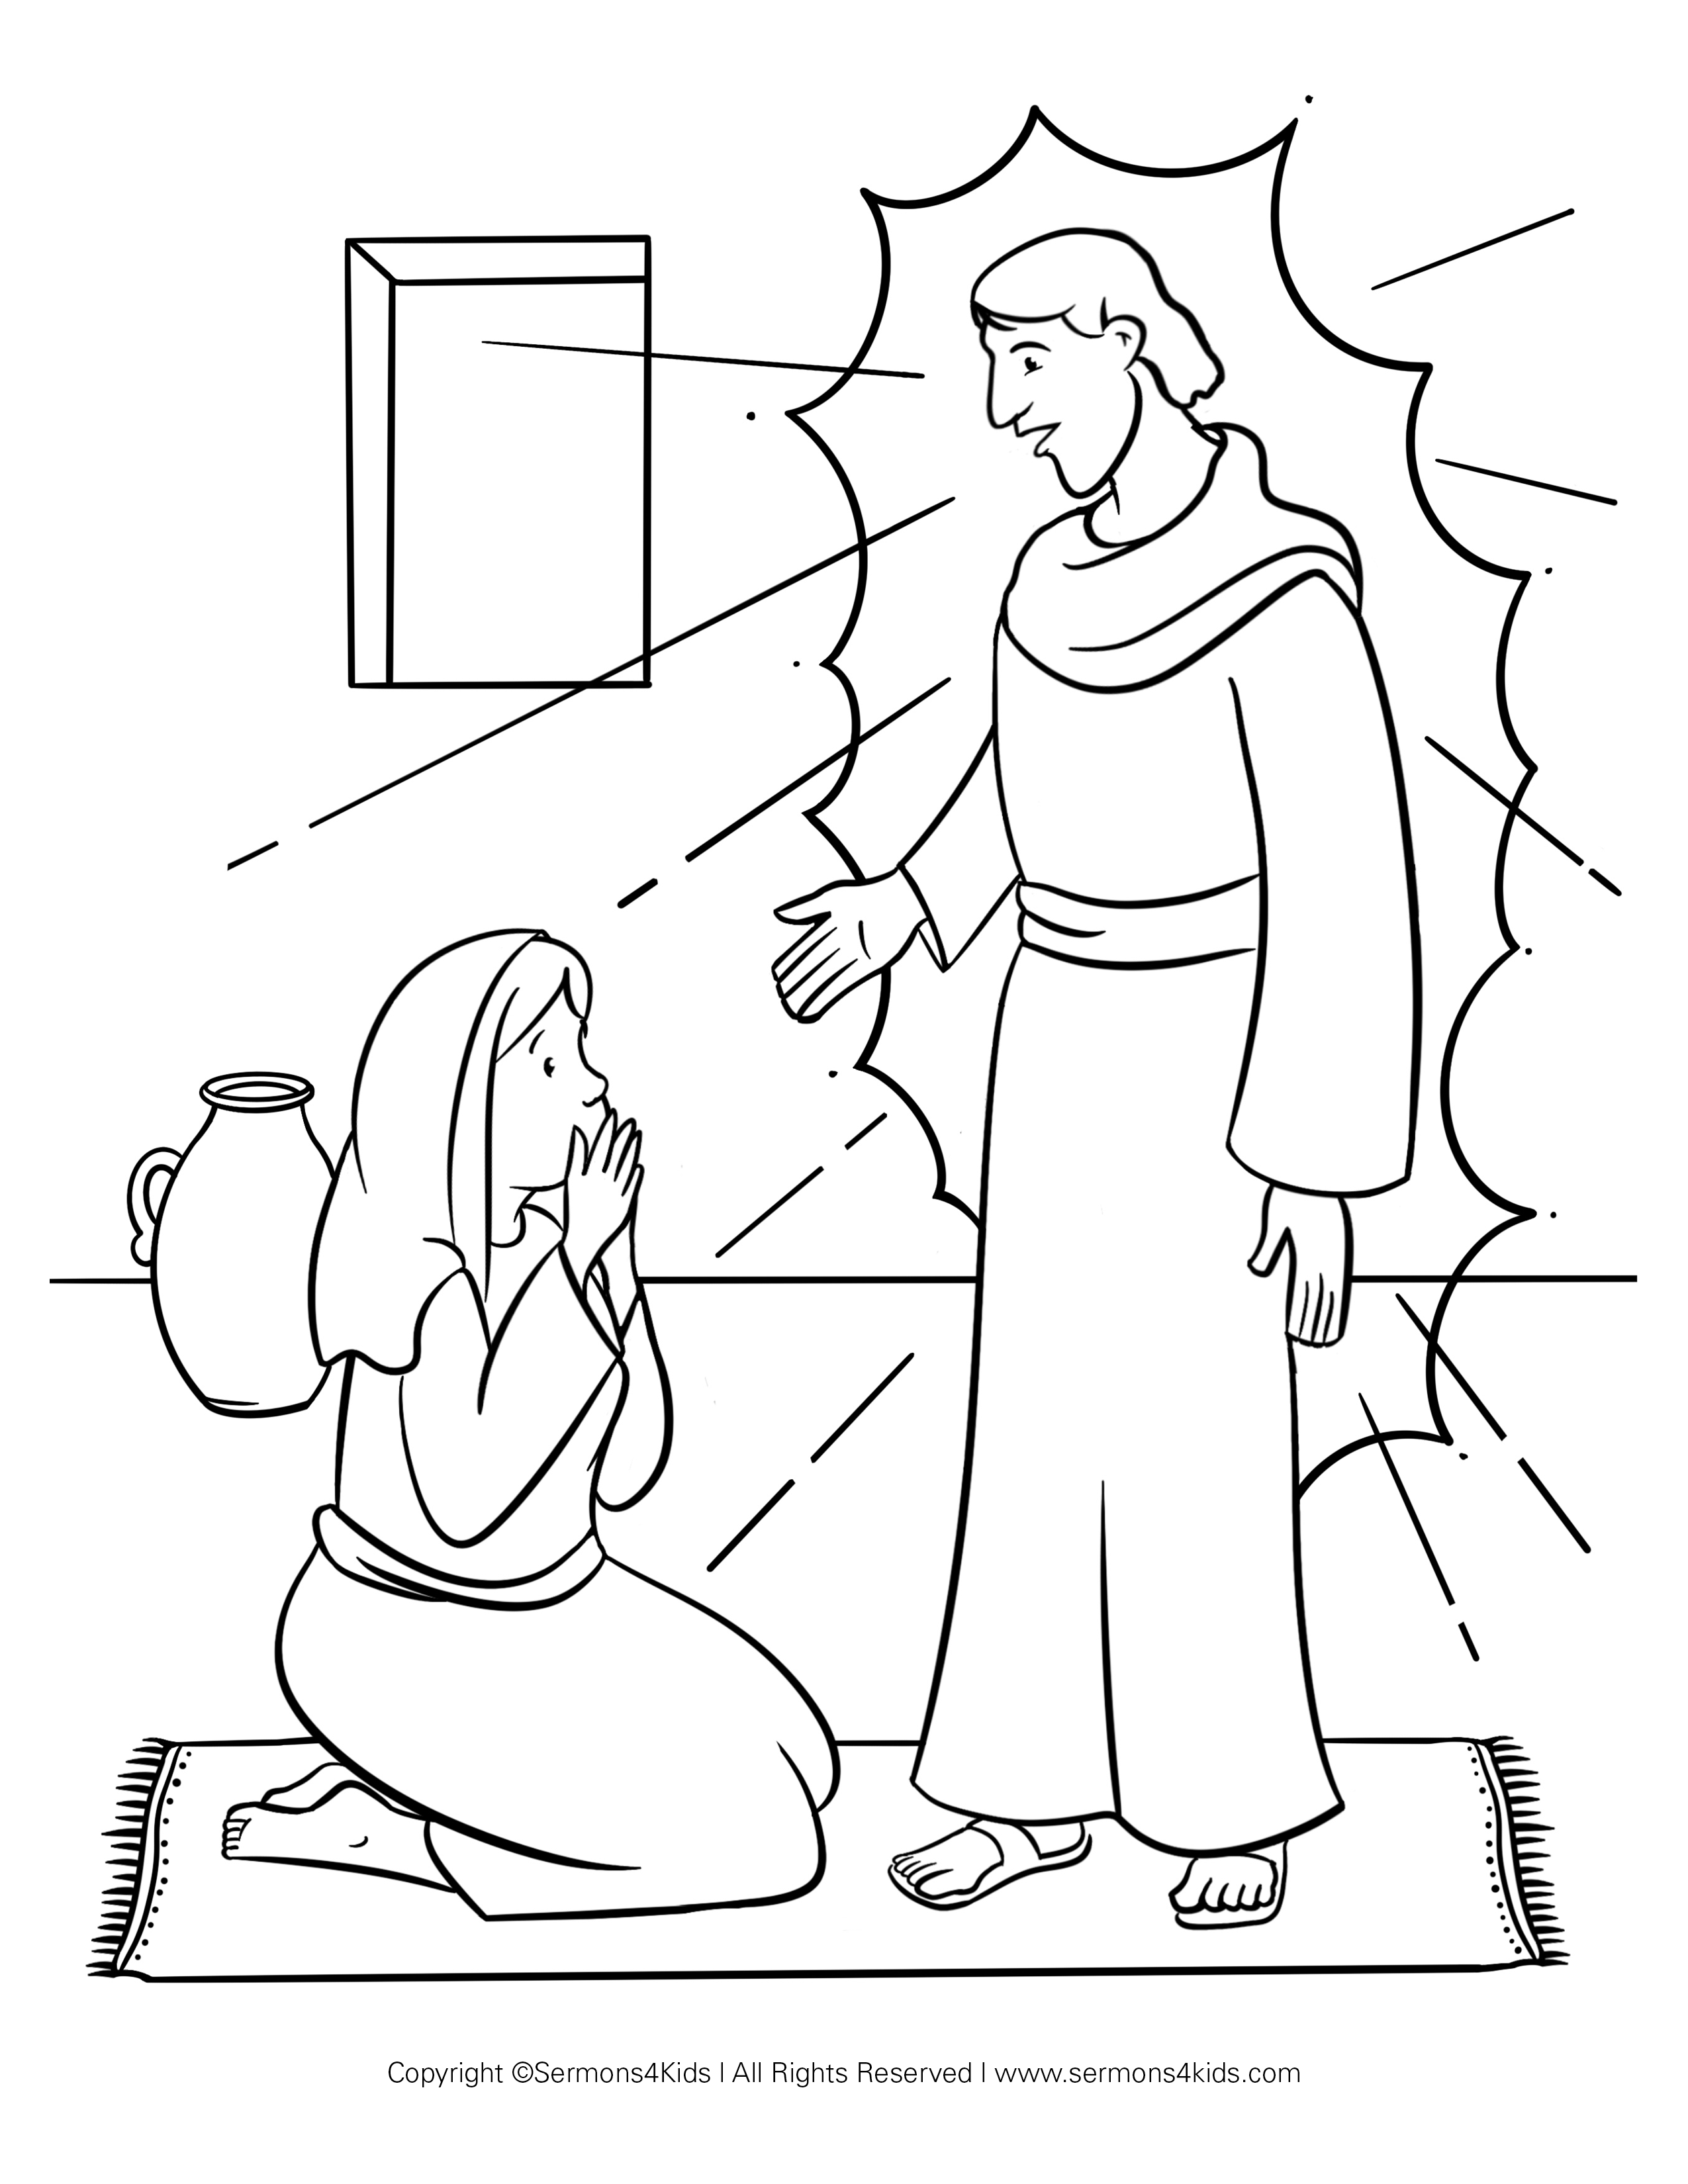 Ángel y María #1 Coloring Page | Sermons4Kids